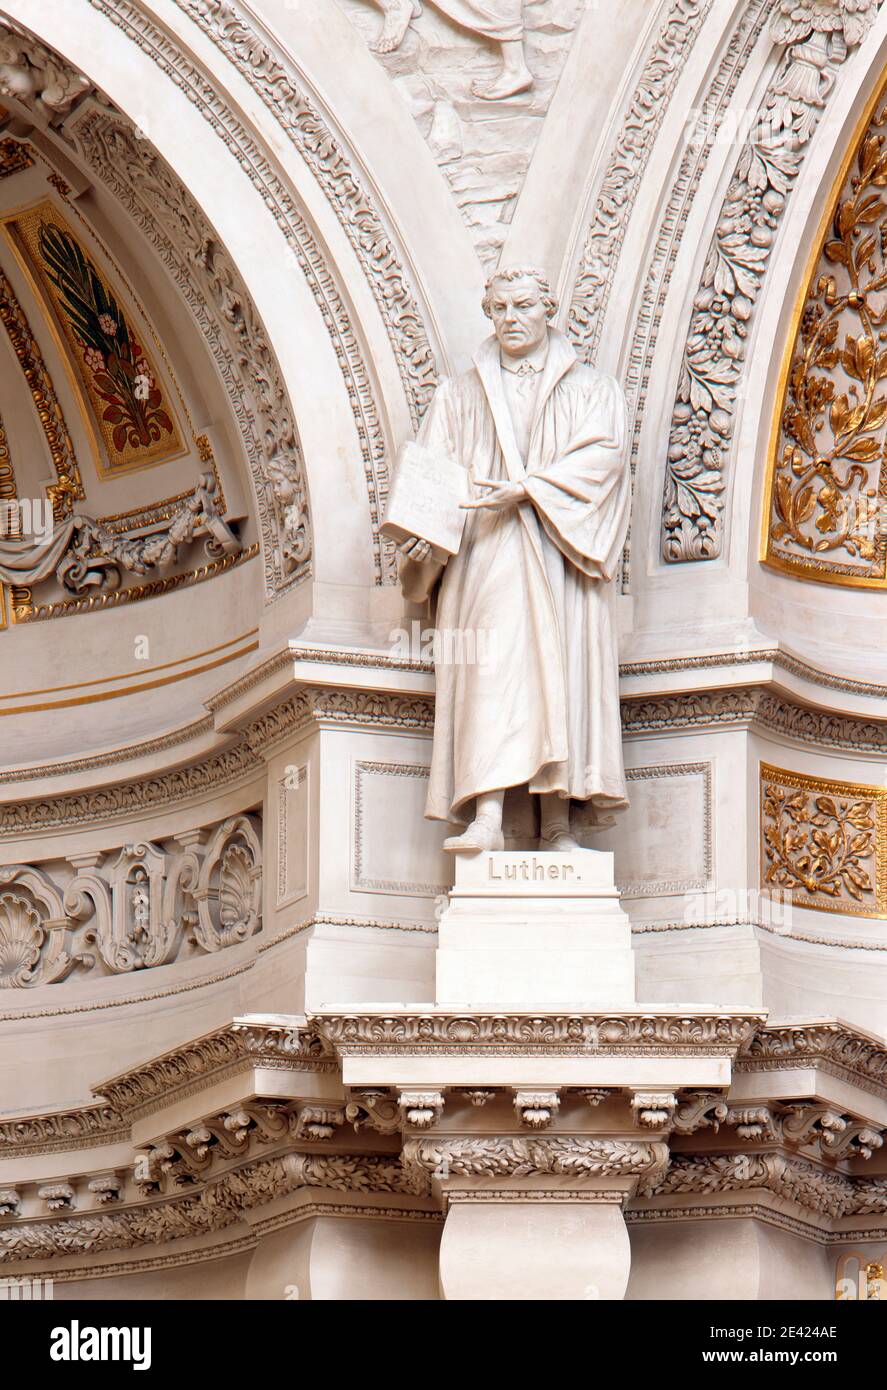 Estatua de Lutero Foto de stock